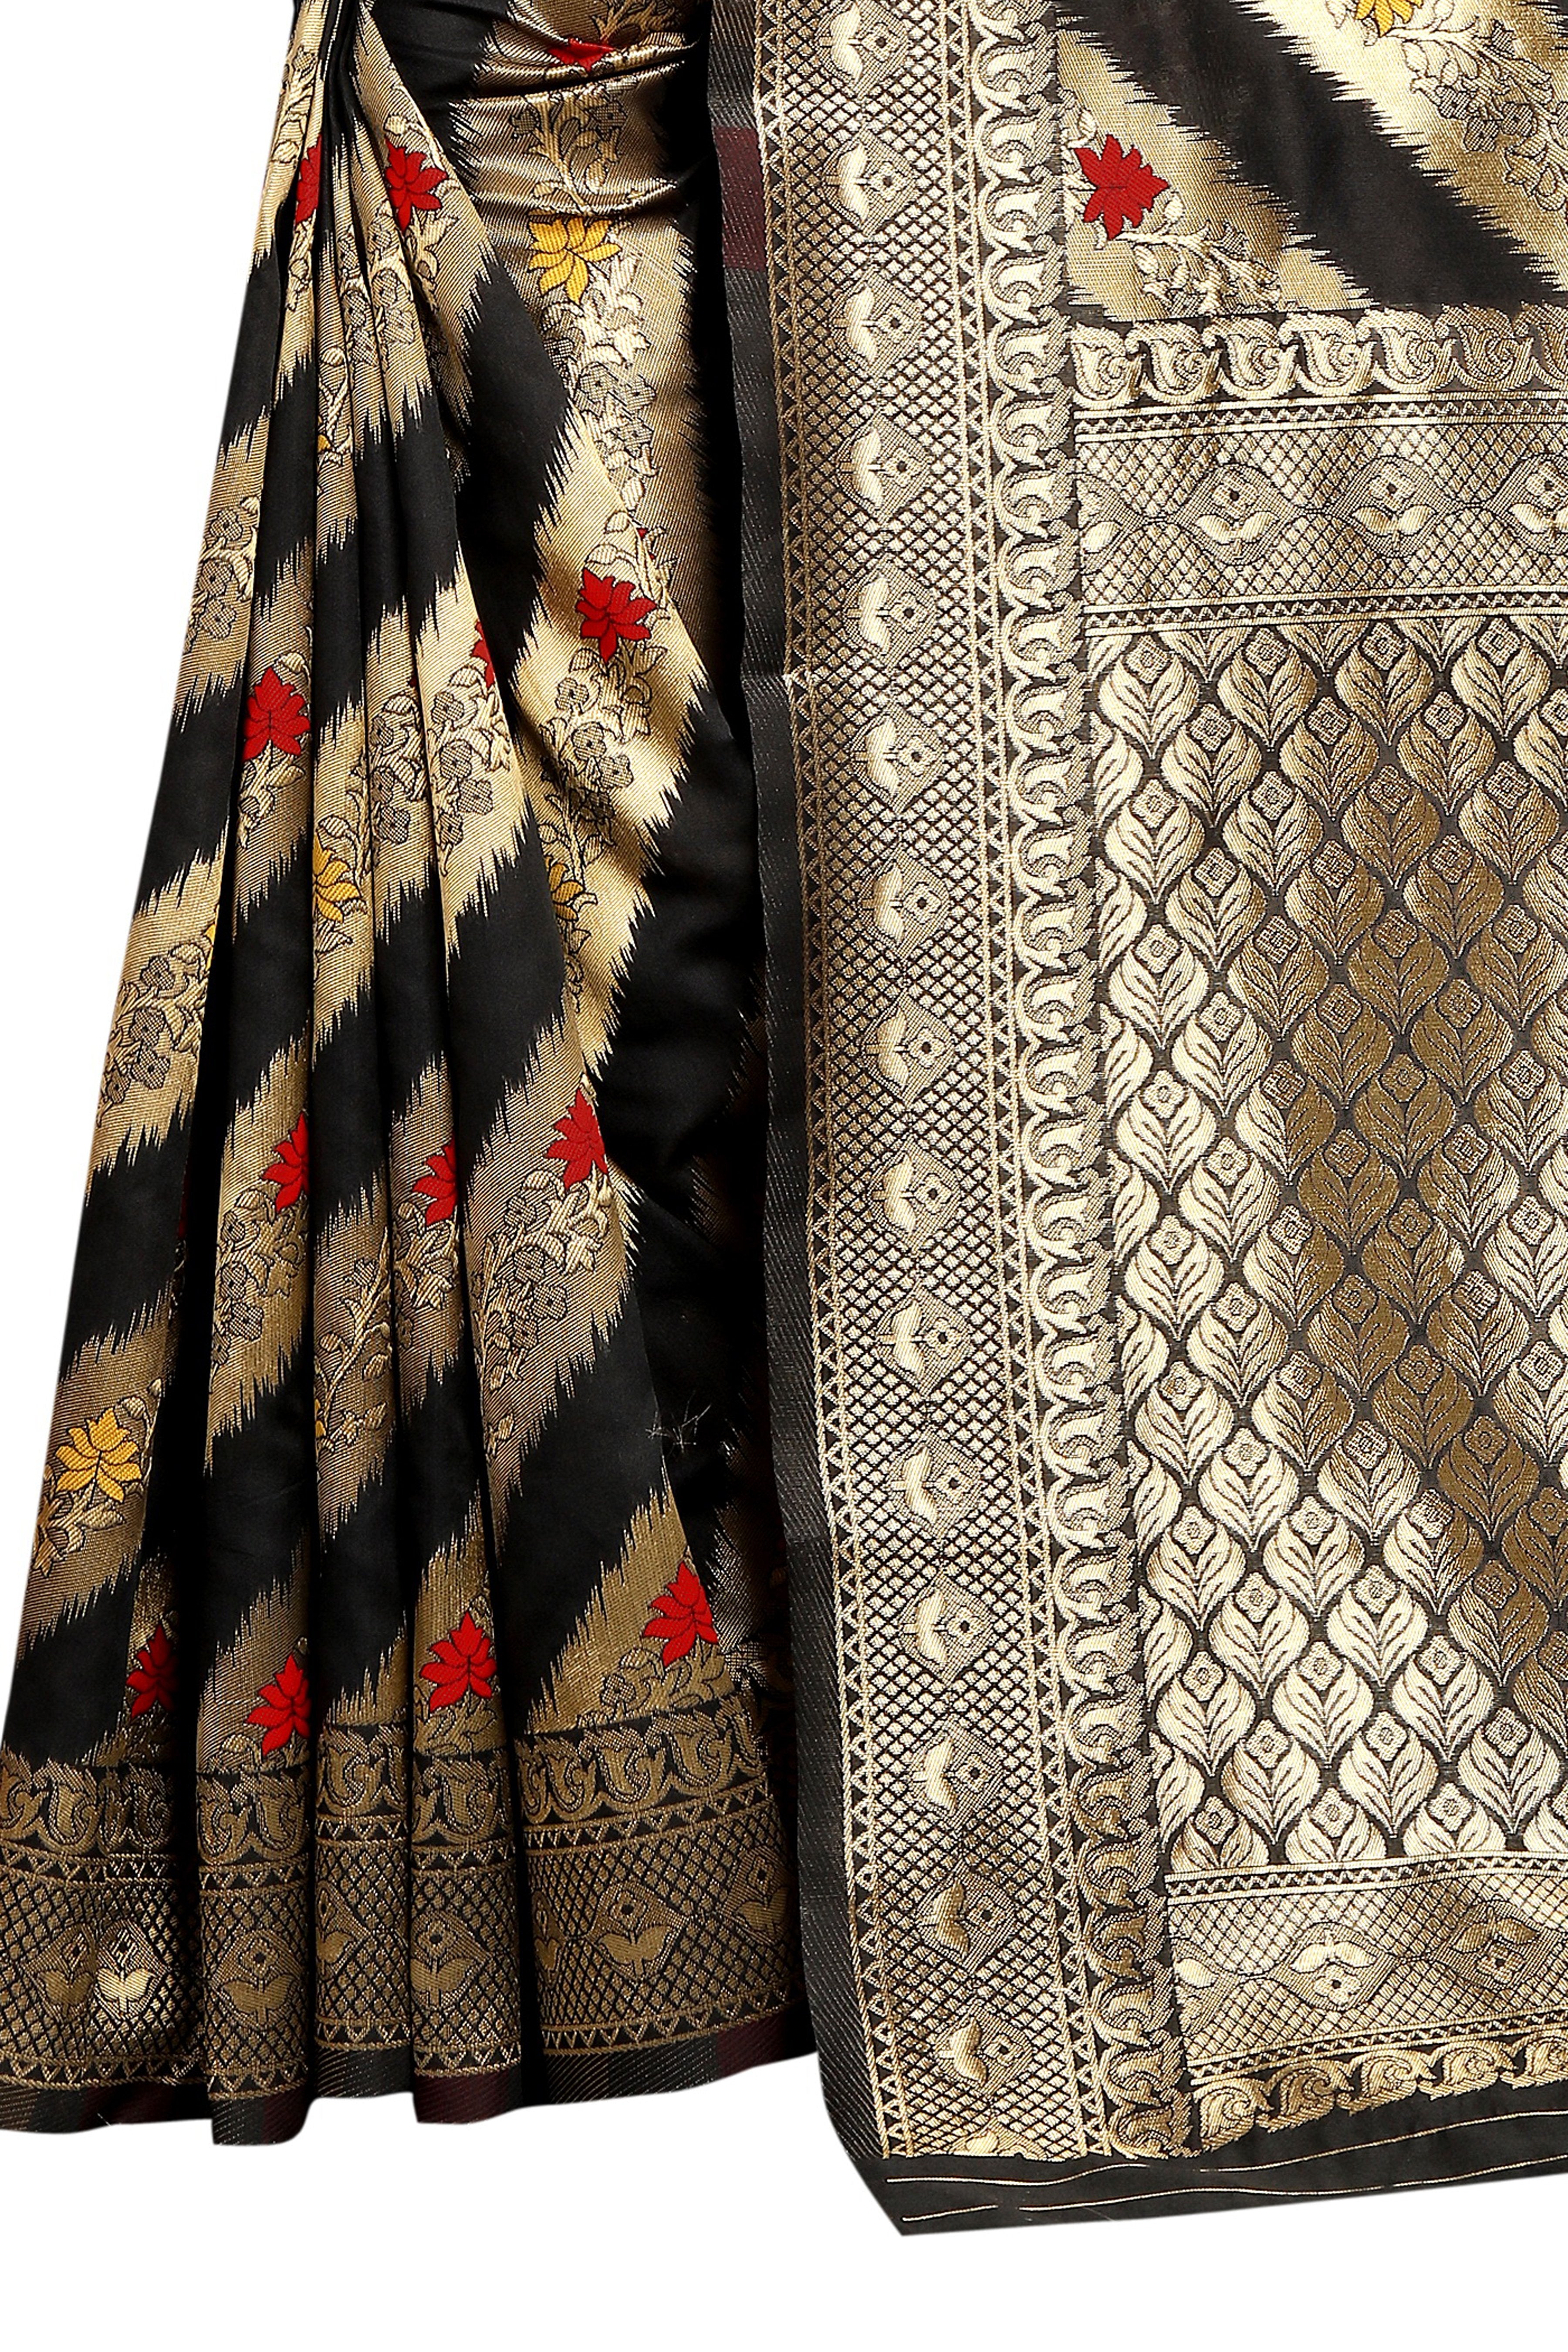 Black Striped Printed  Jacquard Saree With Jari Work